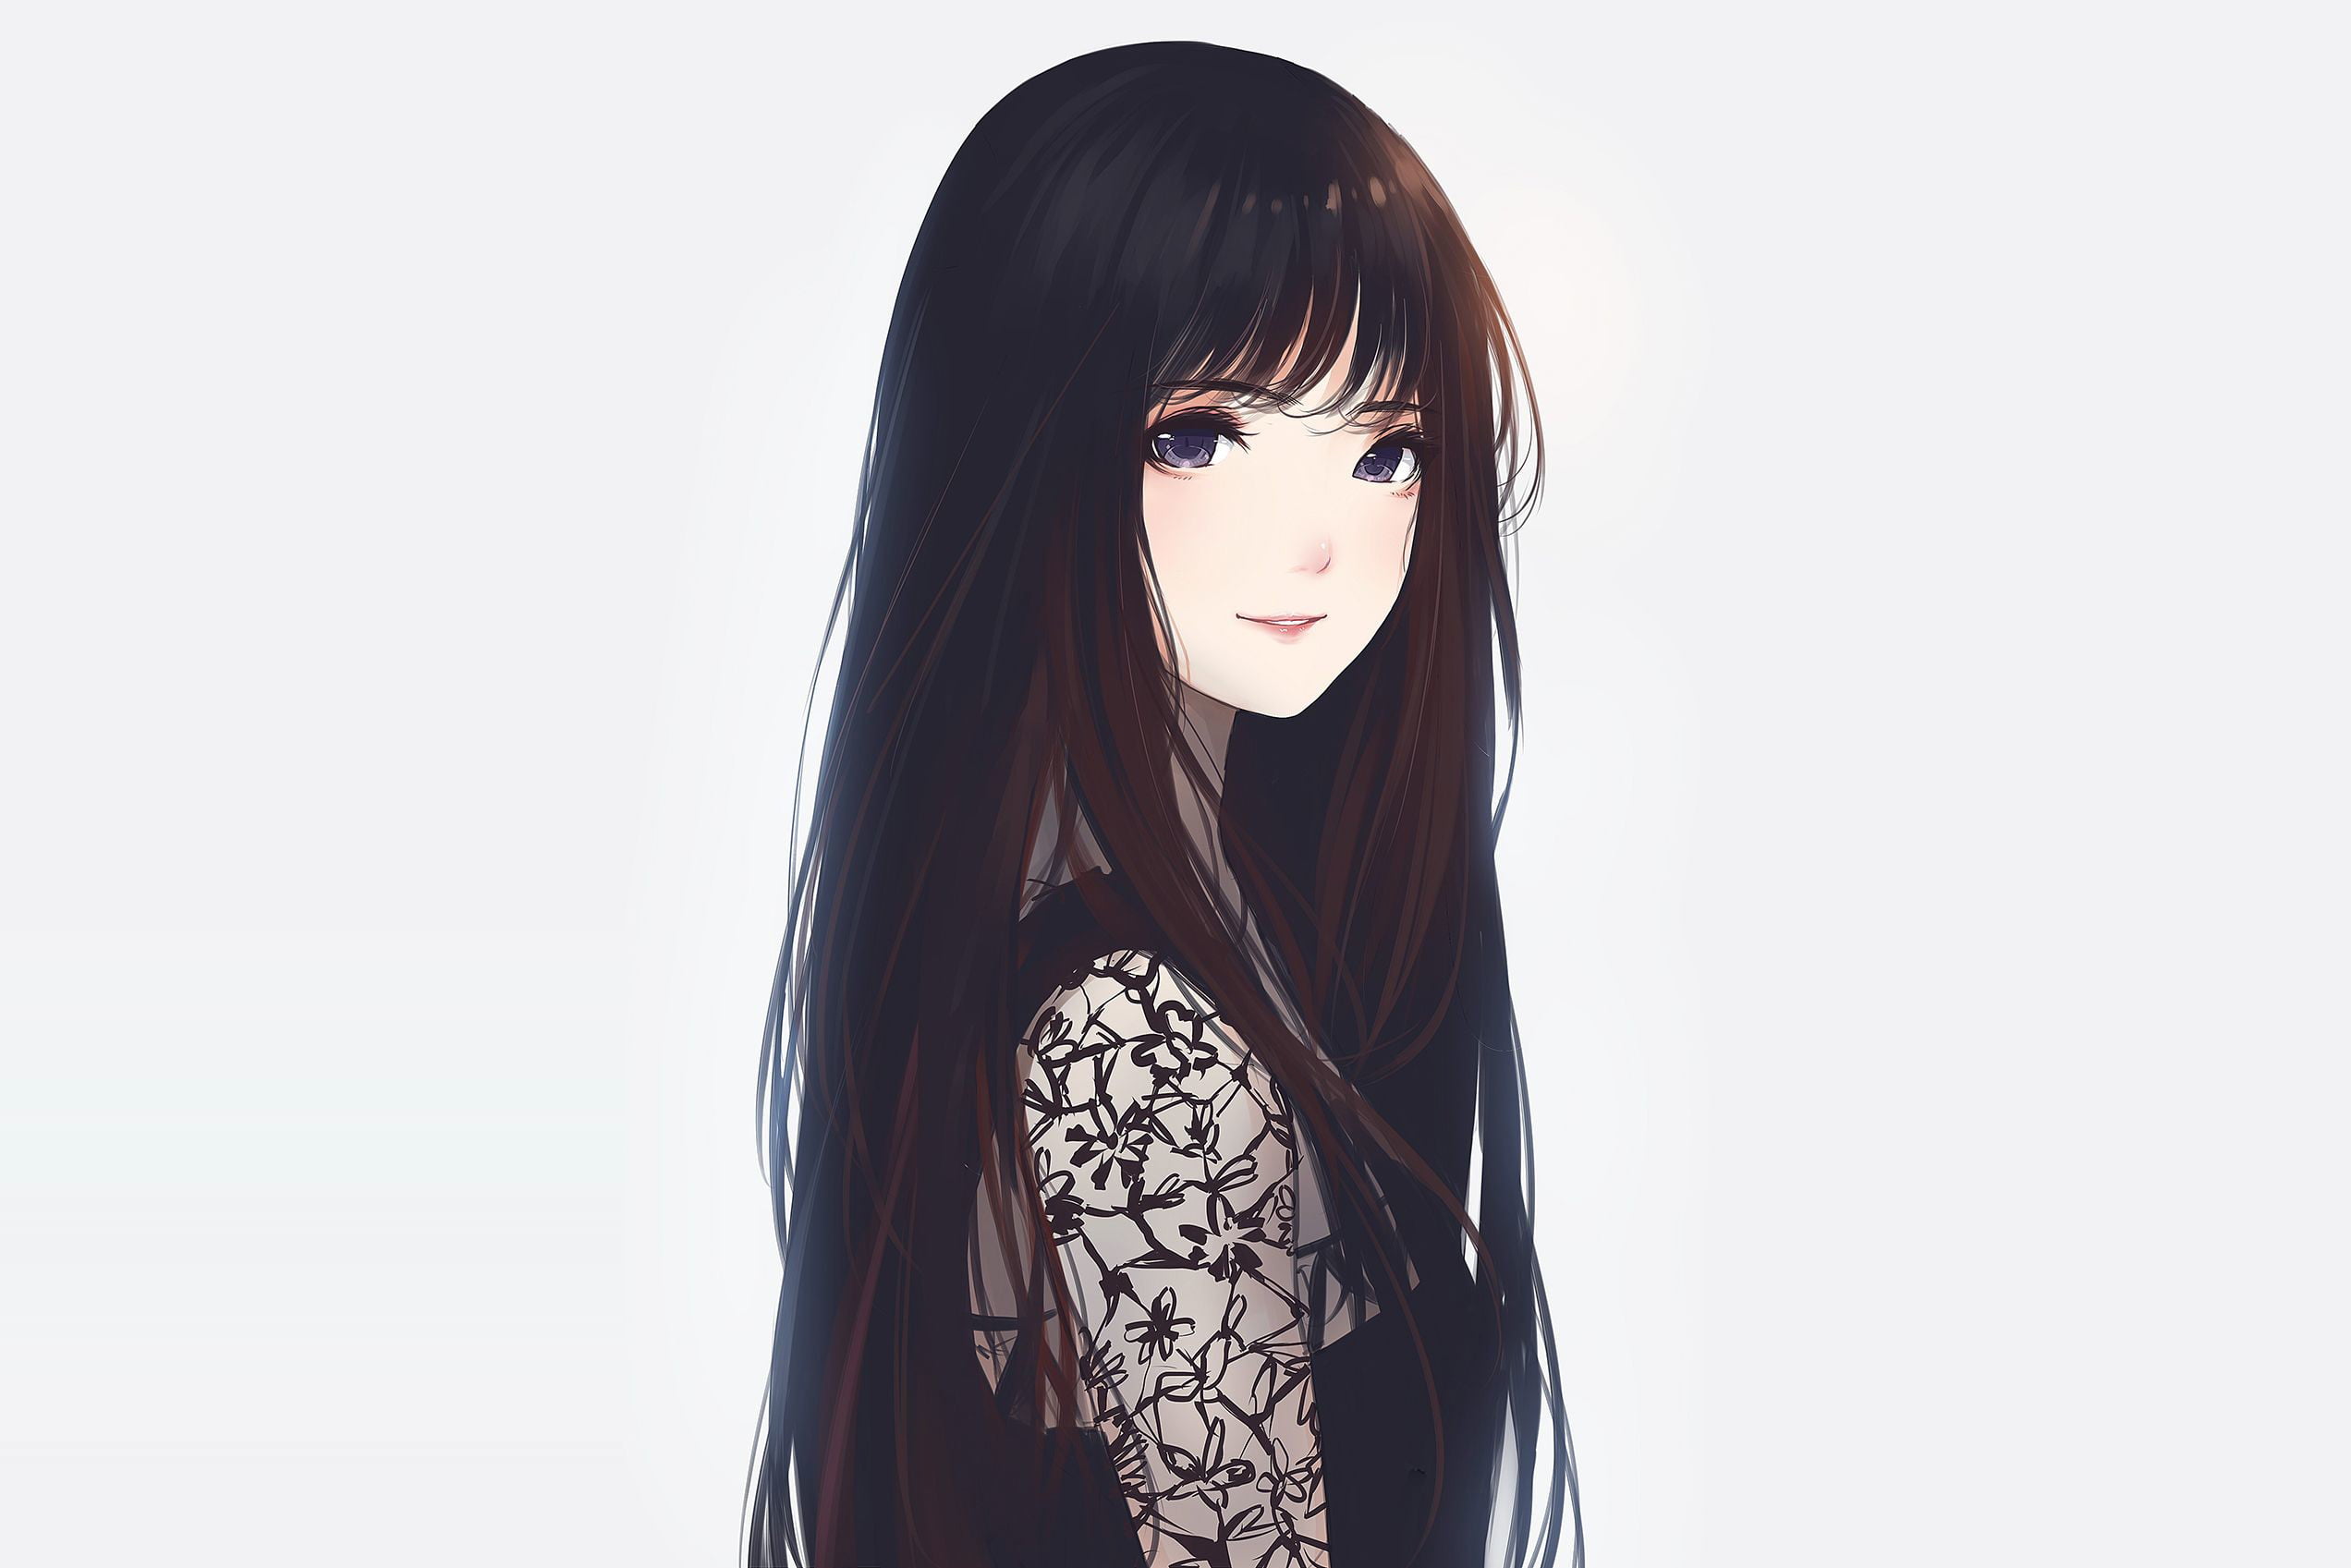 female anime character wearing black dress illustration, anime girls